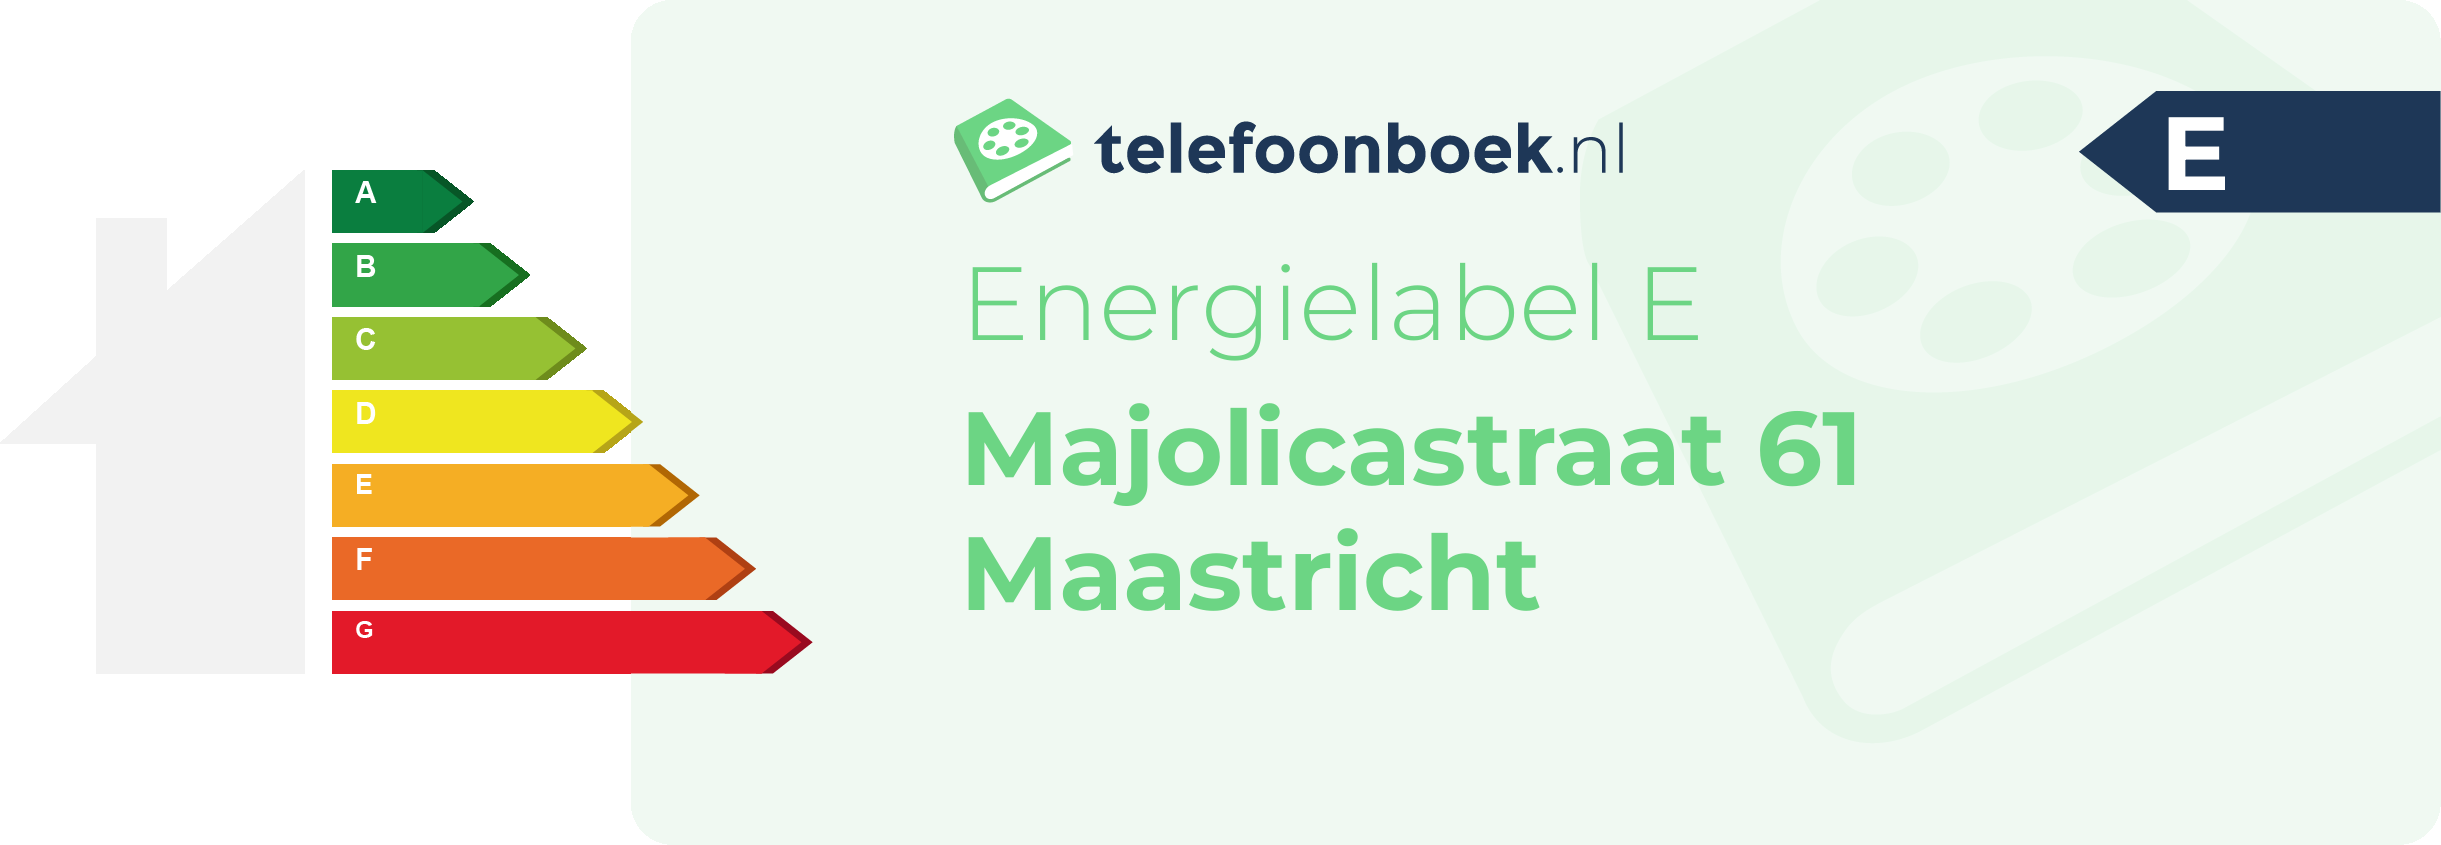 Energielabel Majolicastraat 61 Maastricht